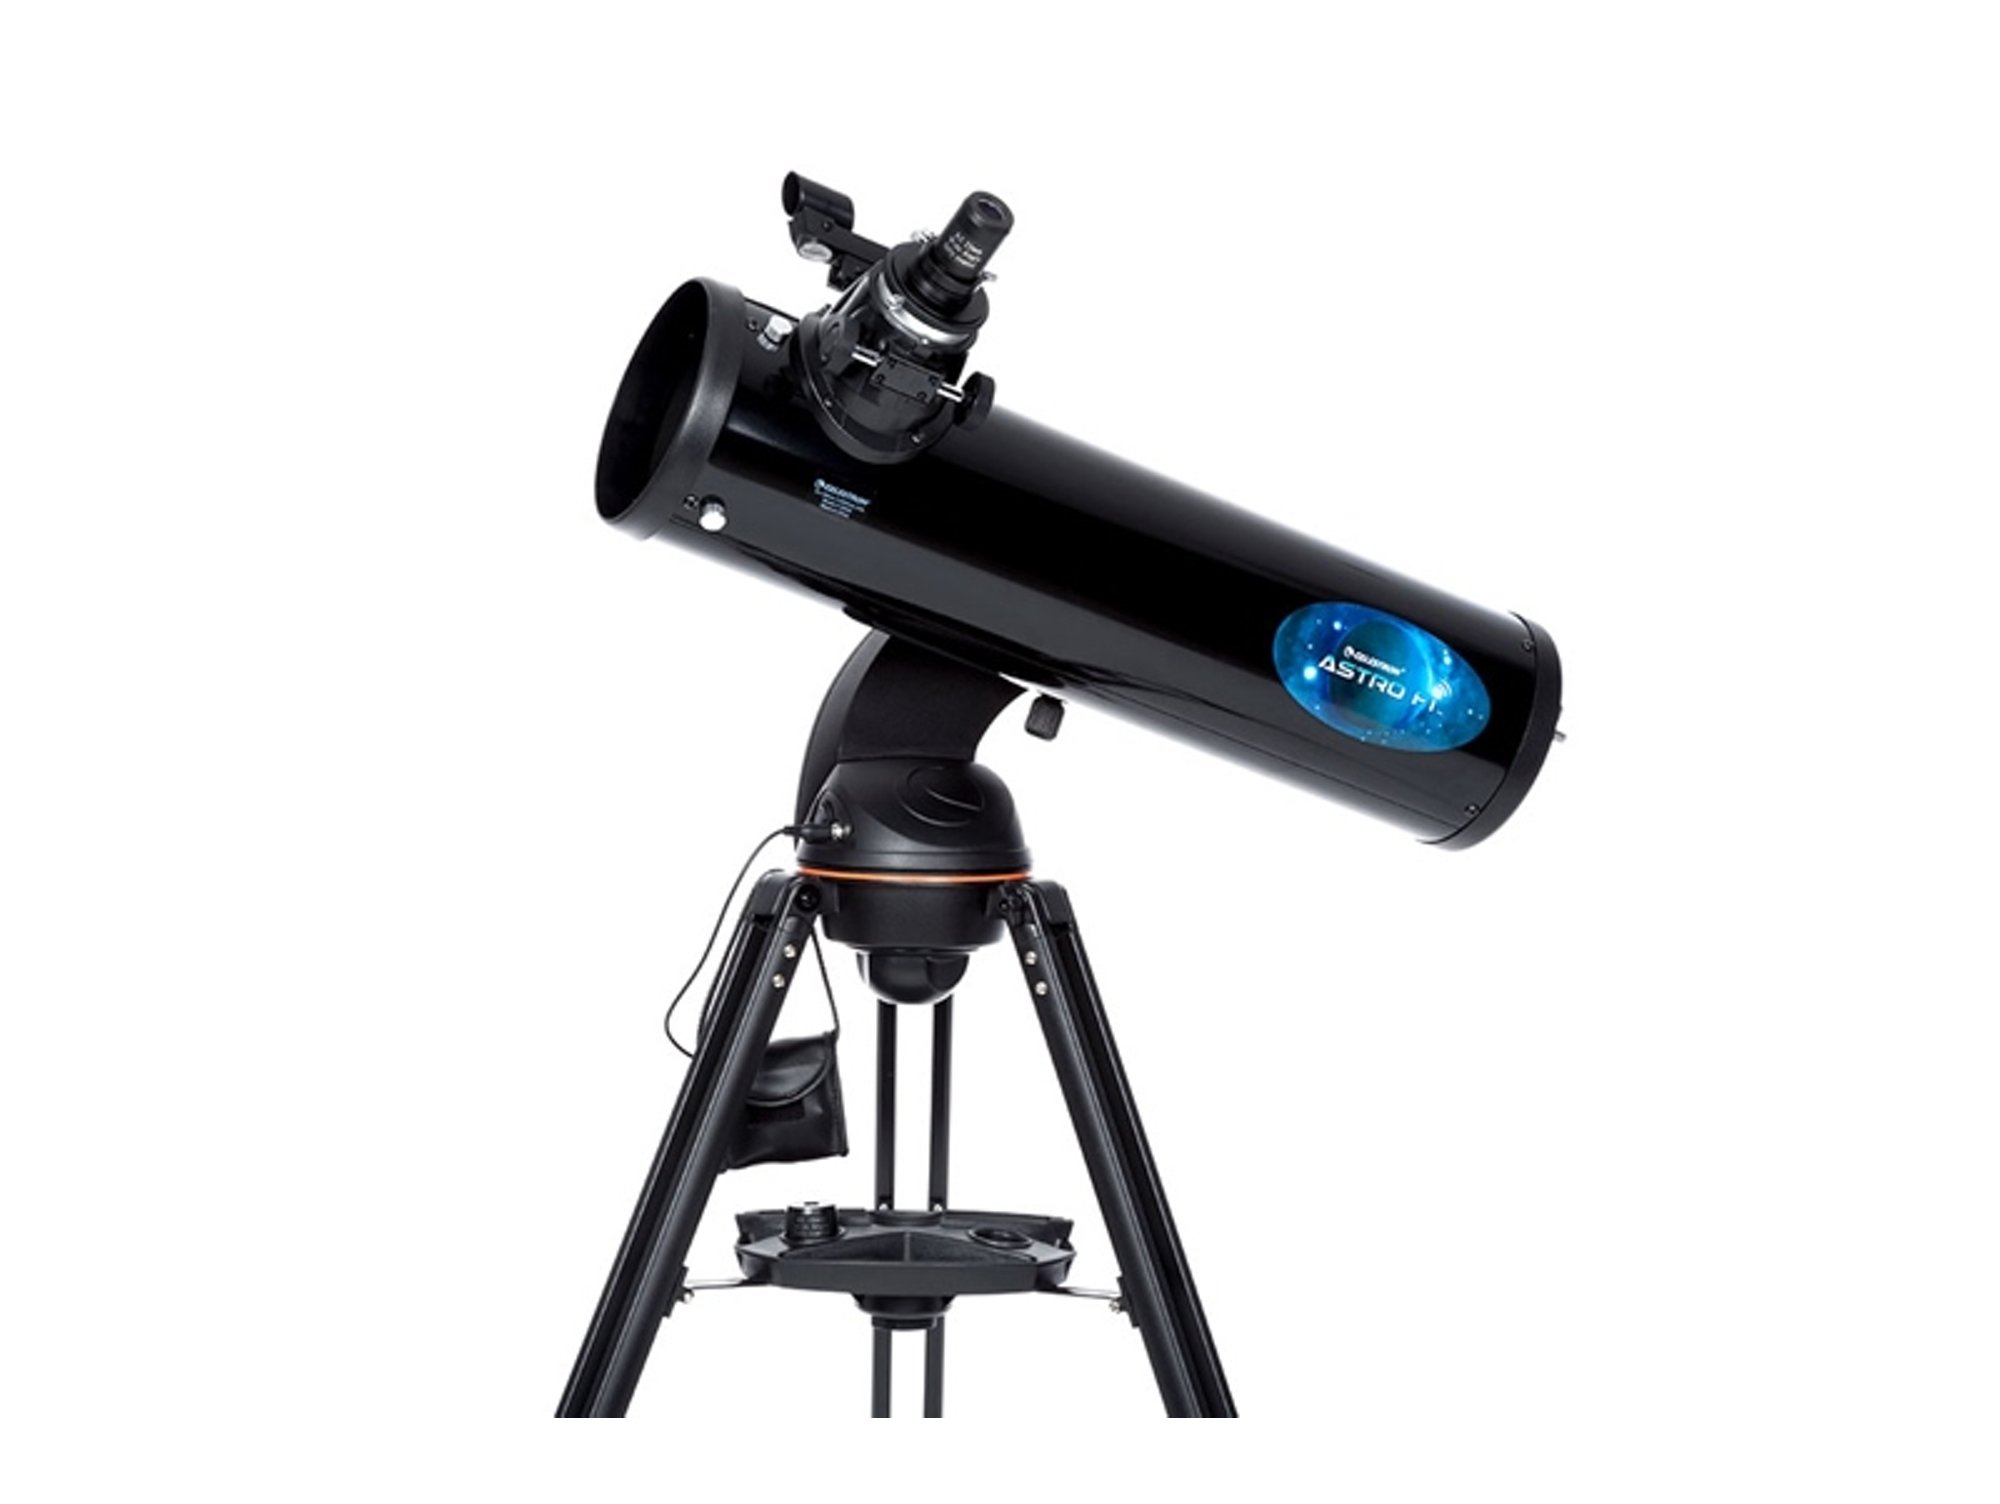 Celestron Fi Telescopio 130 mm de apertura 650 distancia focal f5 130mm